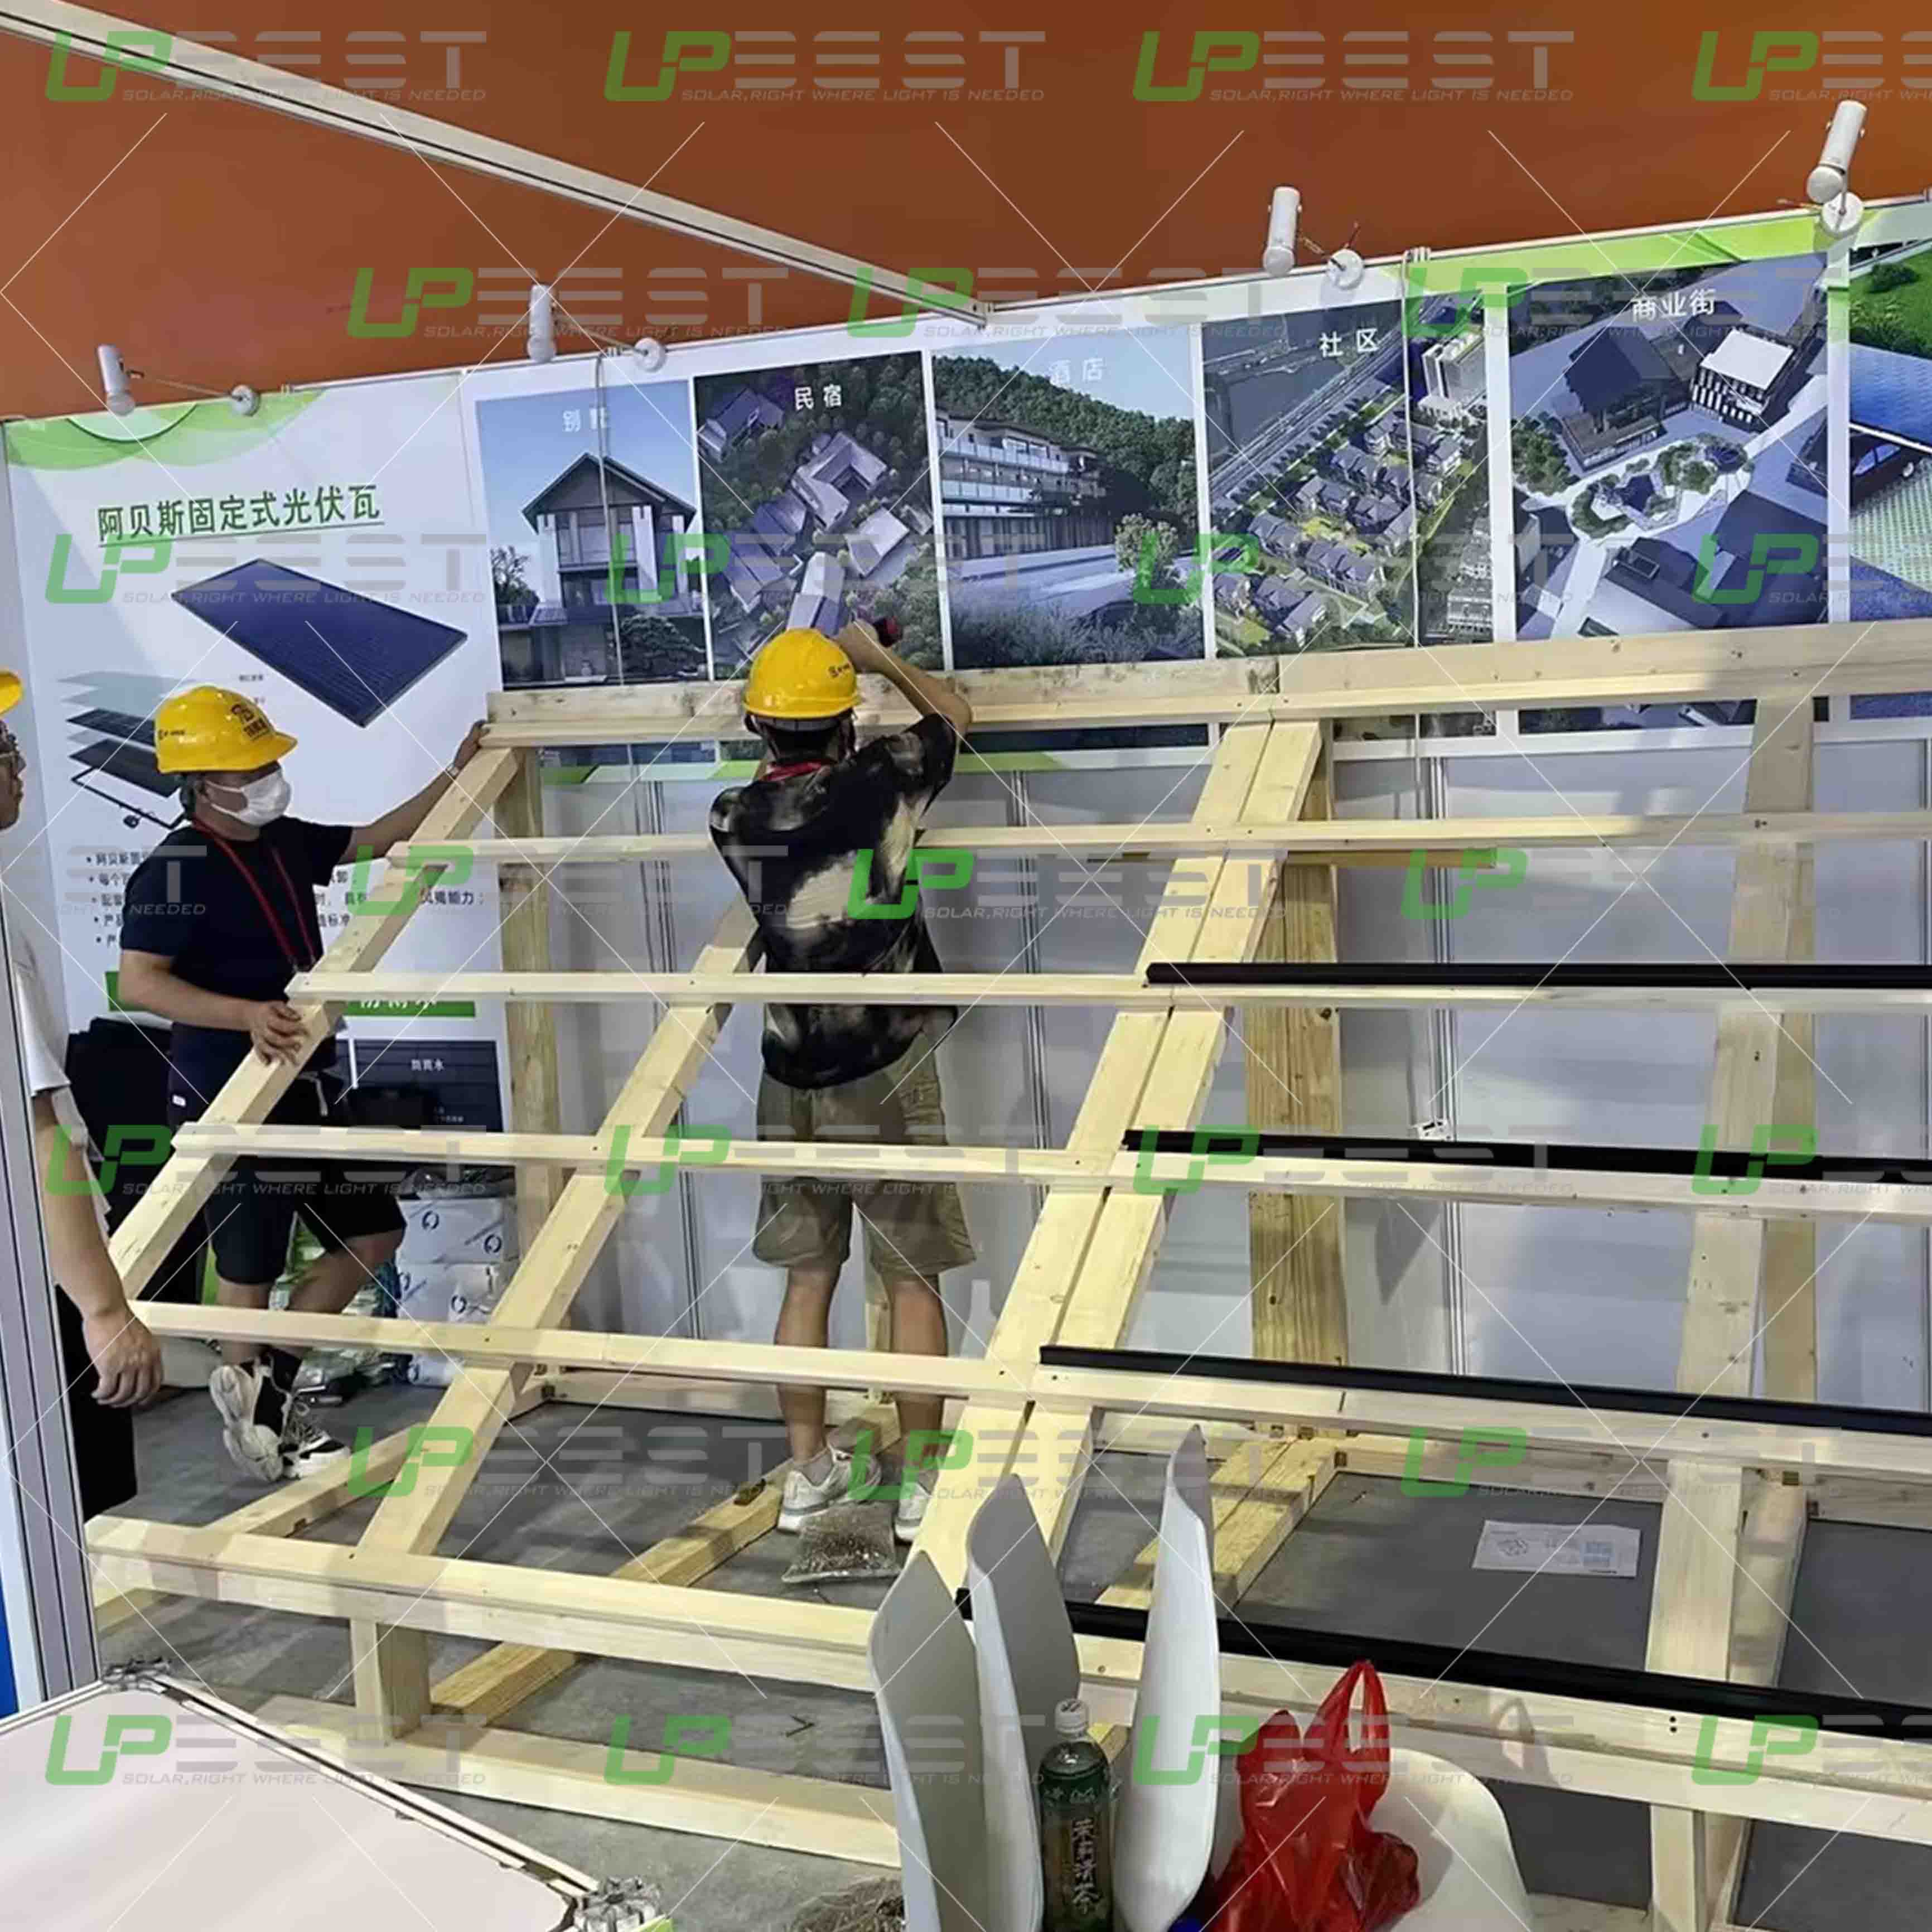 Upbest präsentiert hochmoderne BIPV-Module auf der 16. China International Intergreted Housing Industry & Building Industrialization Expo